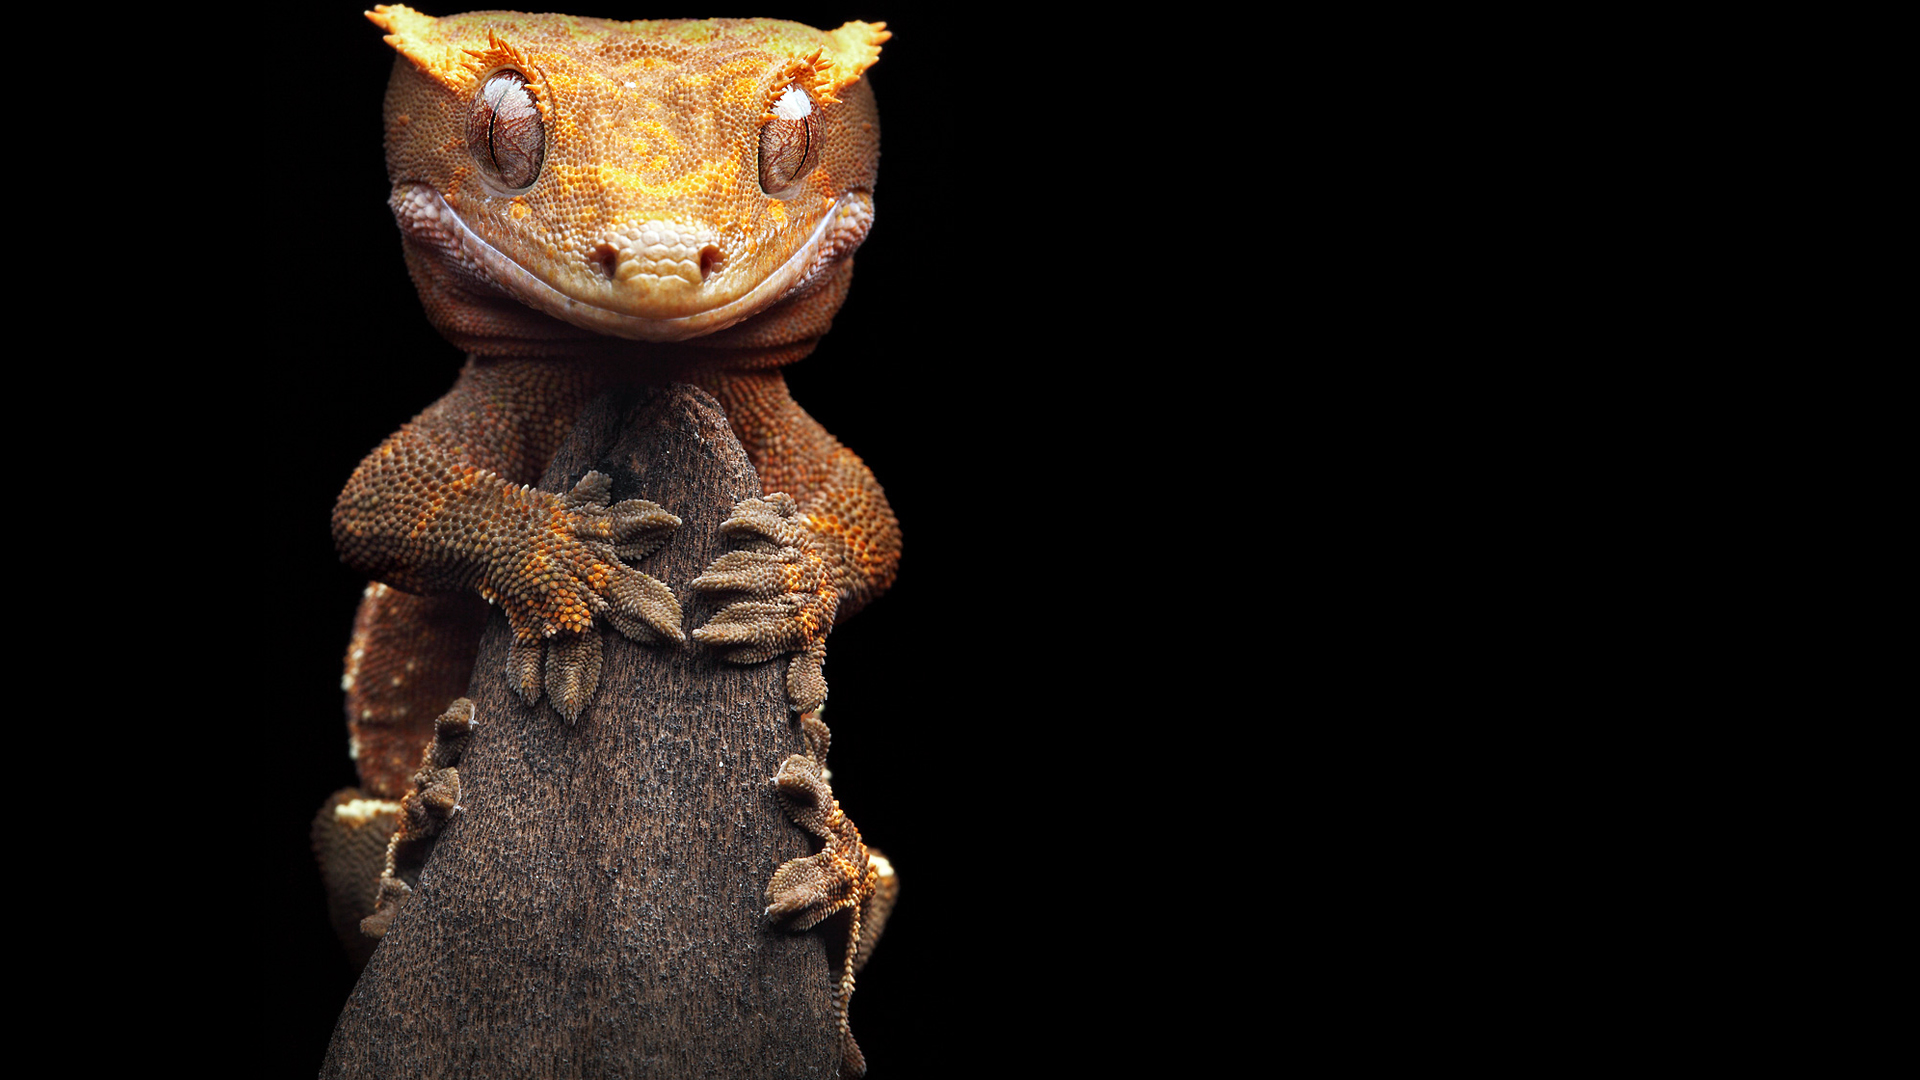 Free HD gecko, animal, reptiles